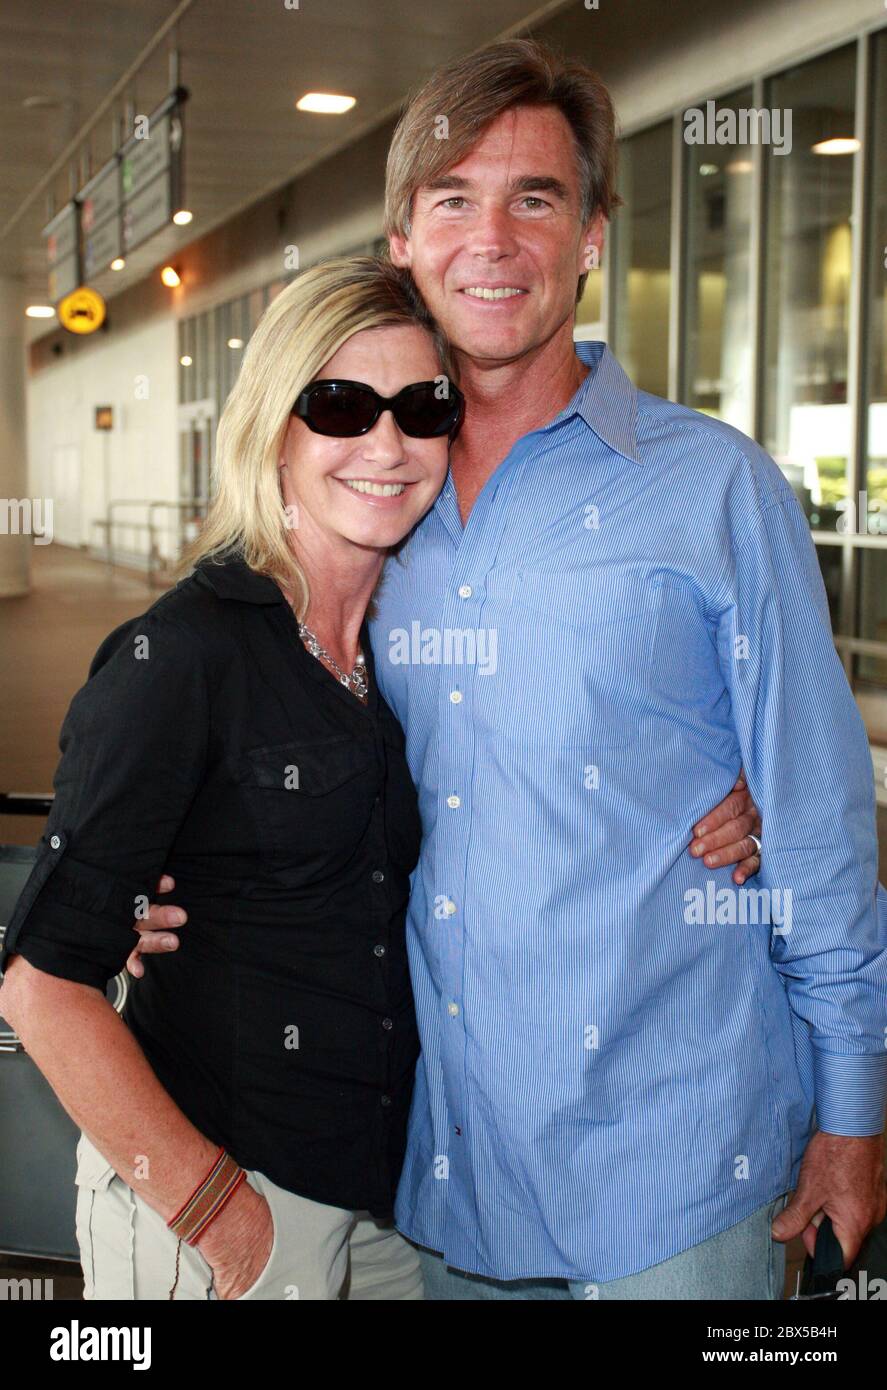 Olivia Newton-John e il marito arrivano all'aeroporto LAX dopo una breve vacanza in Florida. Olivia era incandescente e sorride mentre si recava a casa. Agosto 14 2008 Foto Stock